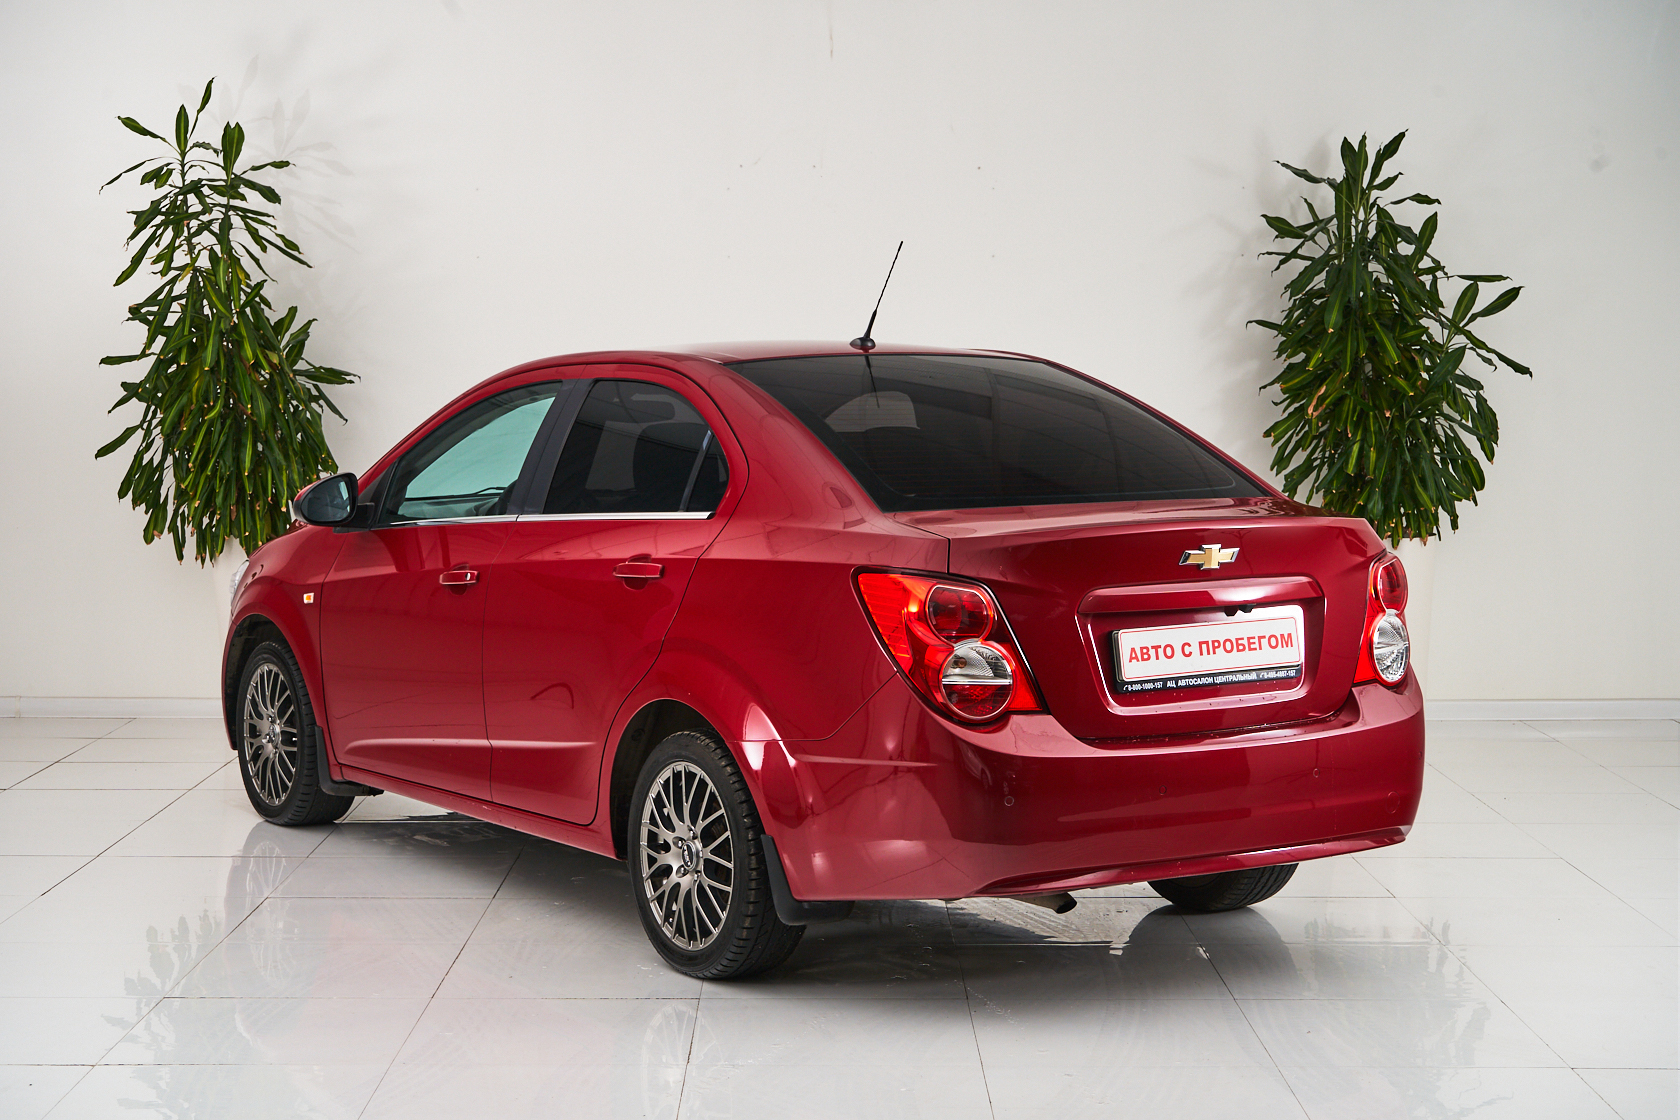 2014 Chevrolet Aveo II №5568757, Красный, 439000 рублей - вид 4